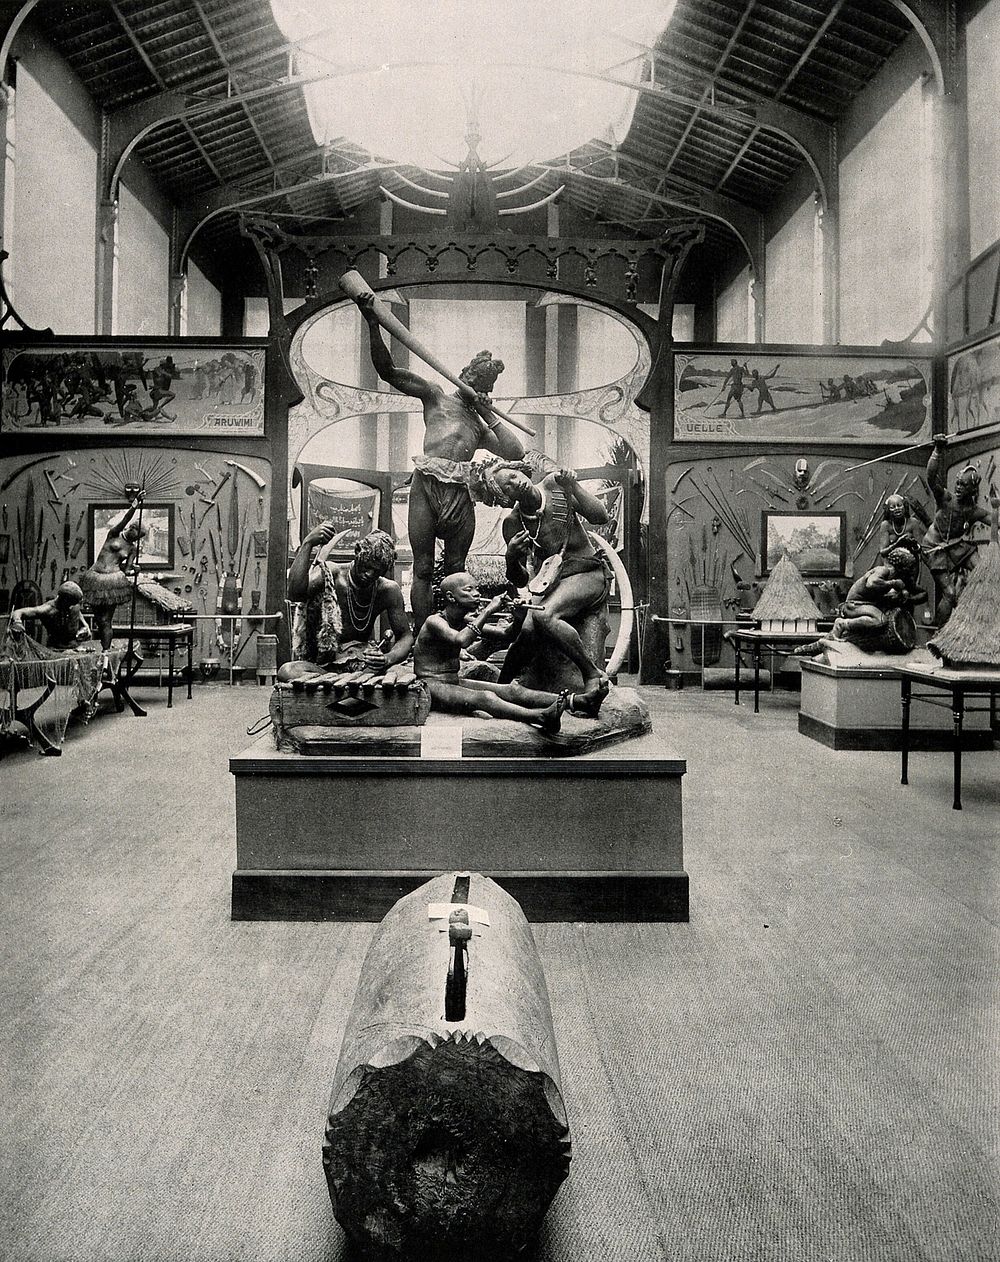 Musée du Congo, Tervuren, Belgium: one of five scenes of the interior. Collotype.